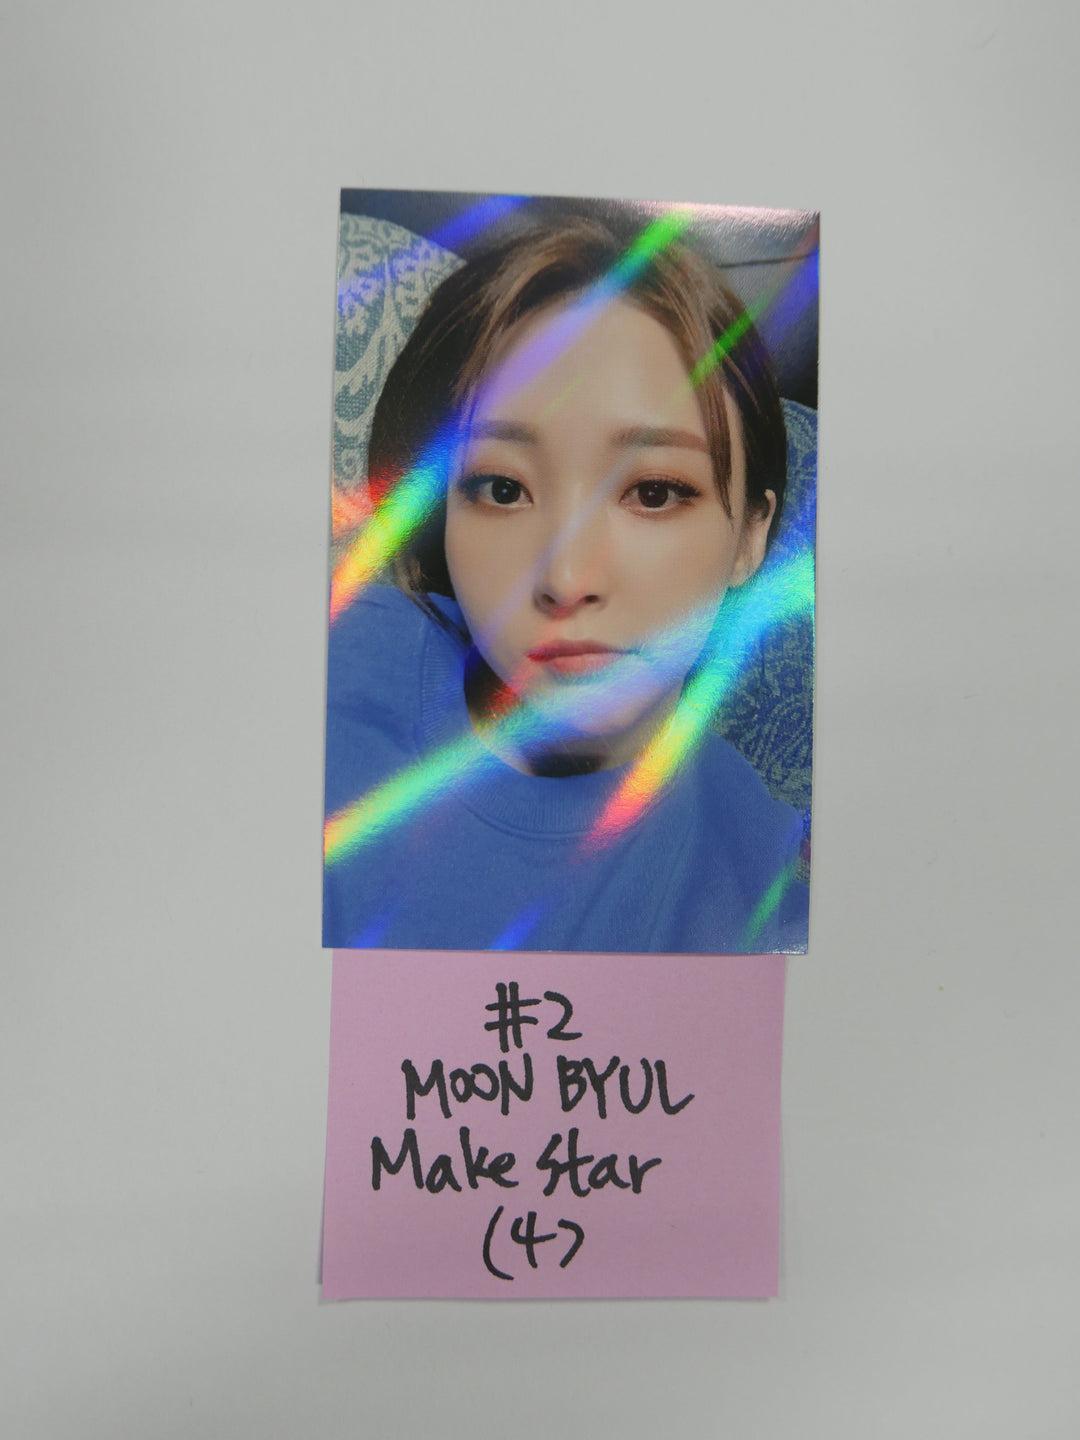 Mamamoo 'WAW' - Make star Fan Sign Event Photocard